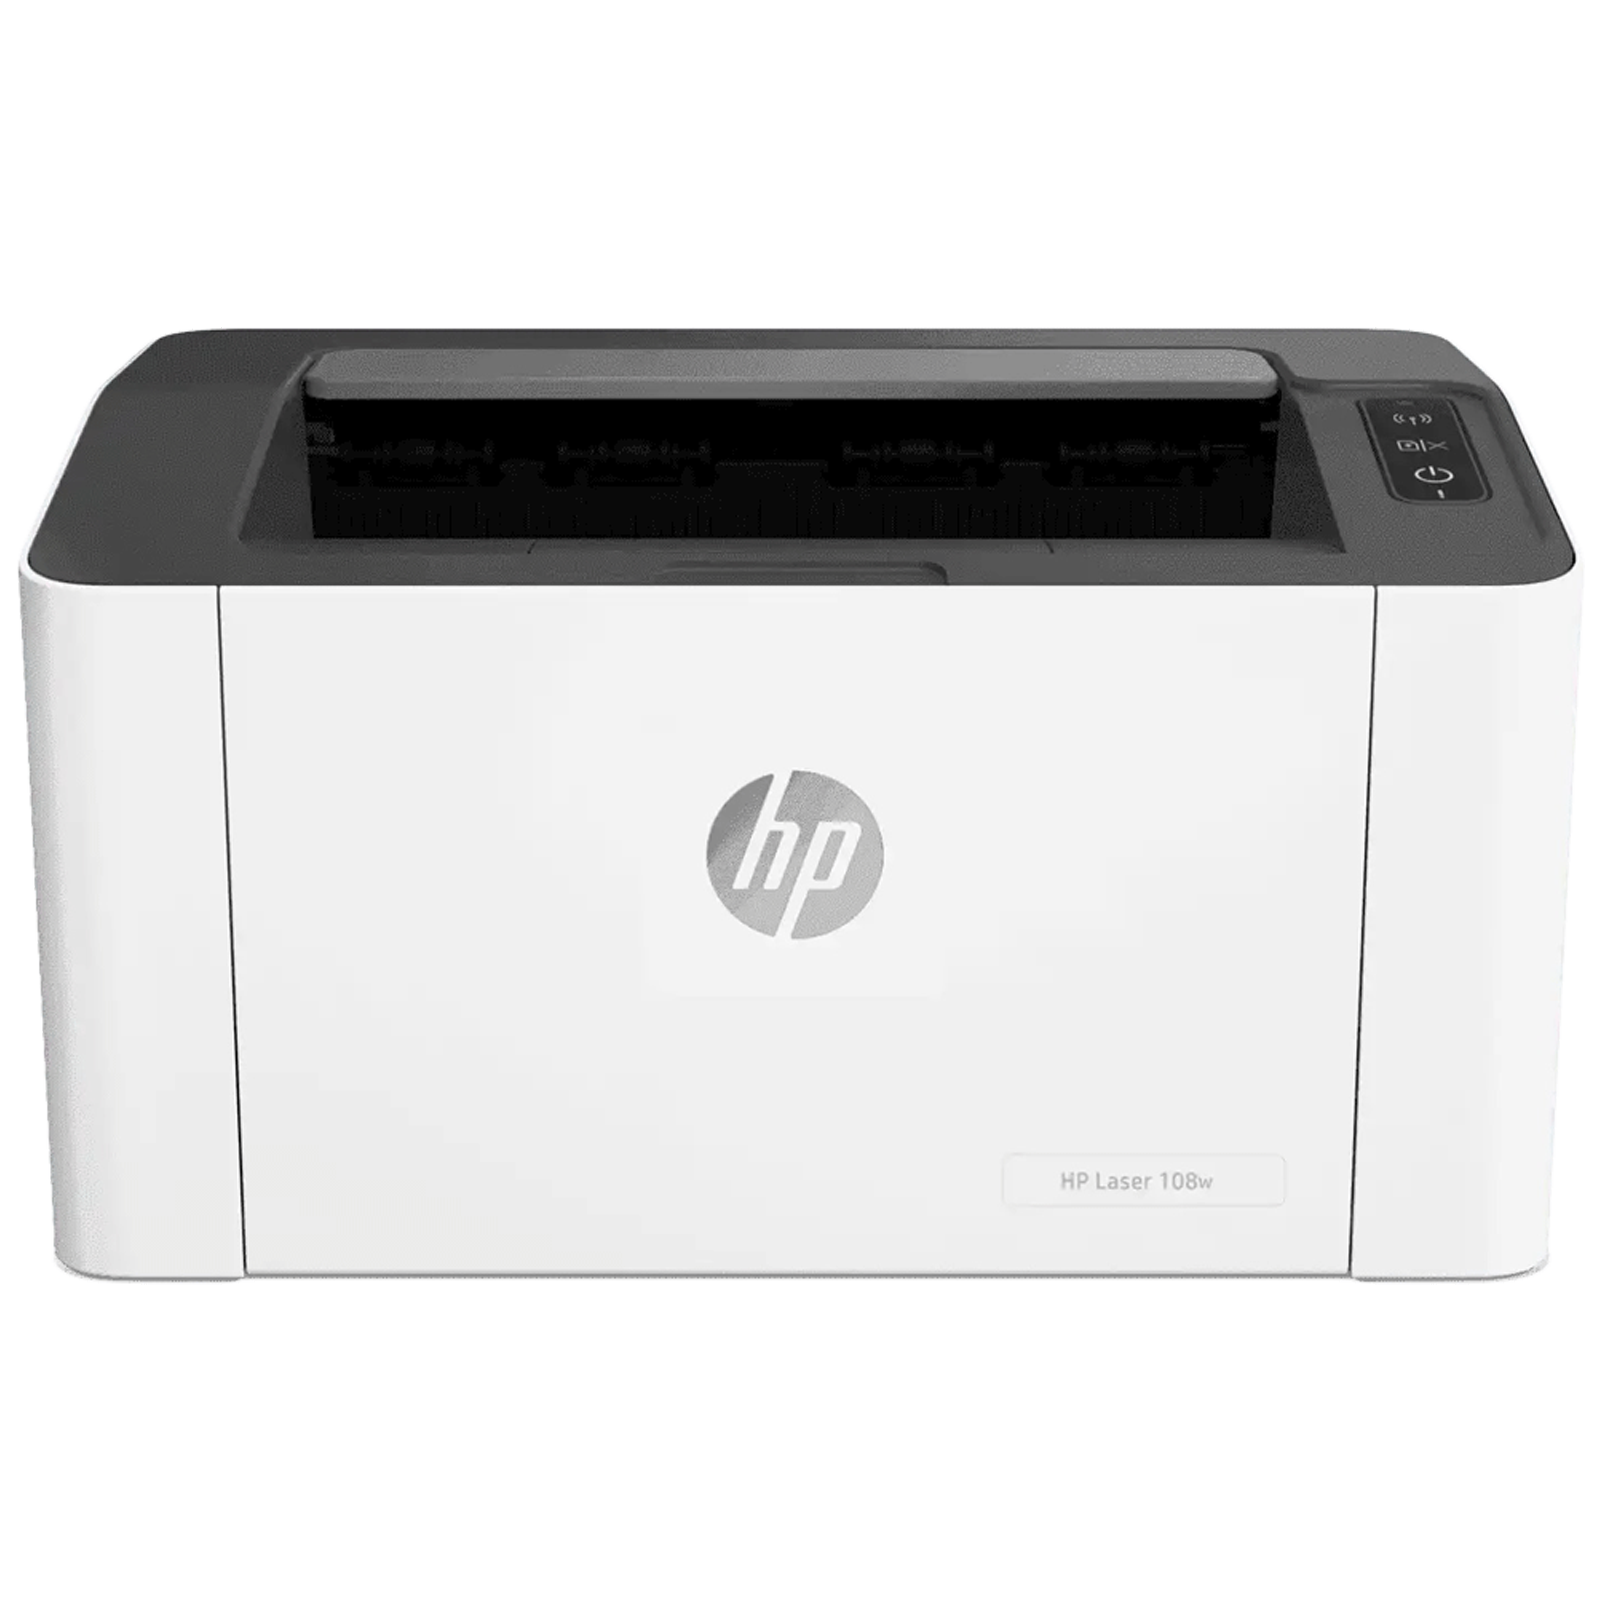 HP Laser 108w Wireless Black & White Laserjet Printer (Wi-Fi Direct Printing, 4ZB80A, White)_1